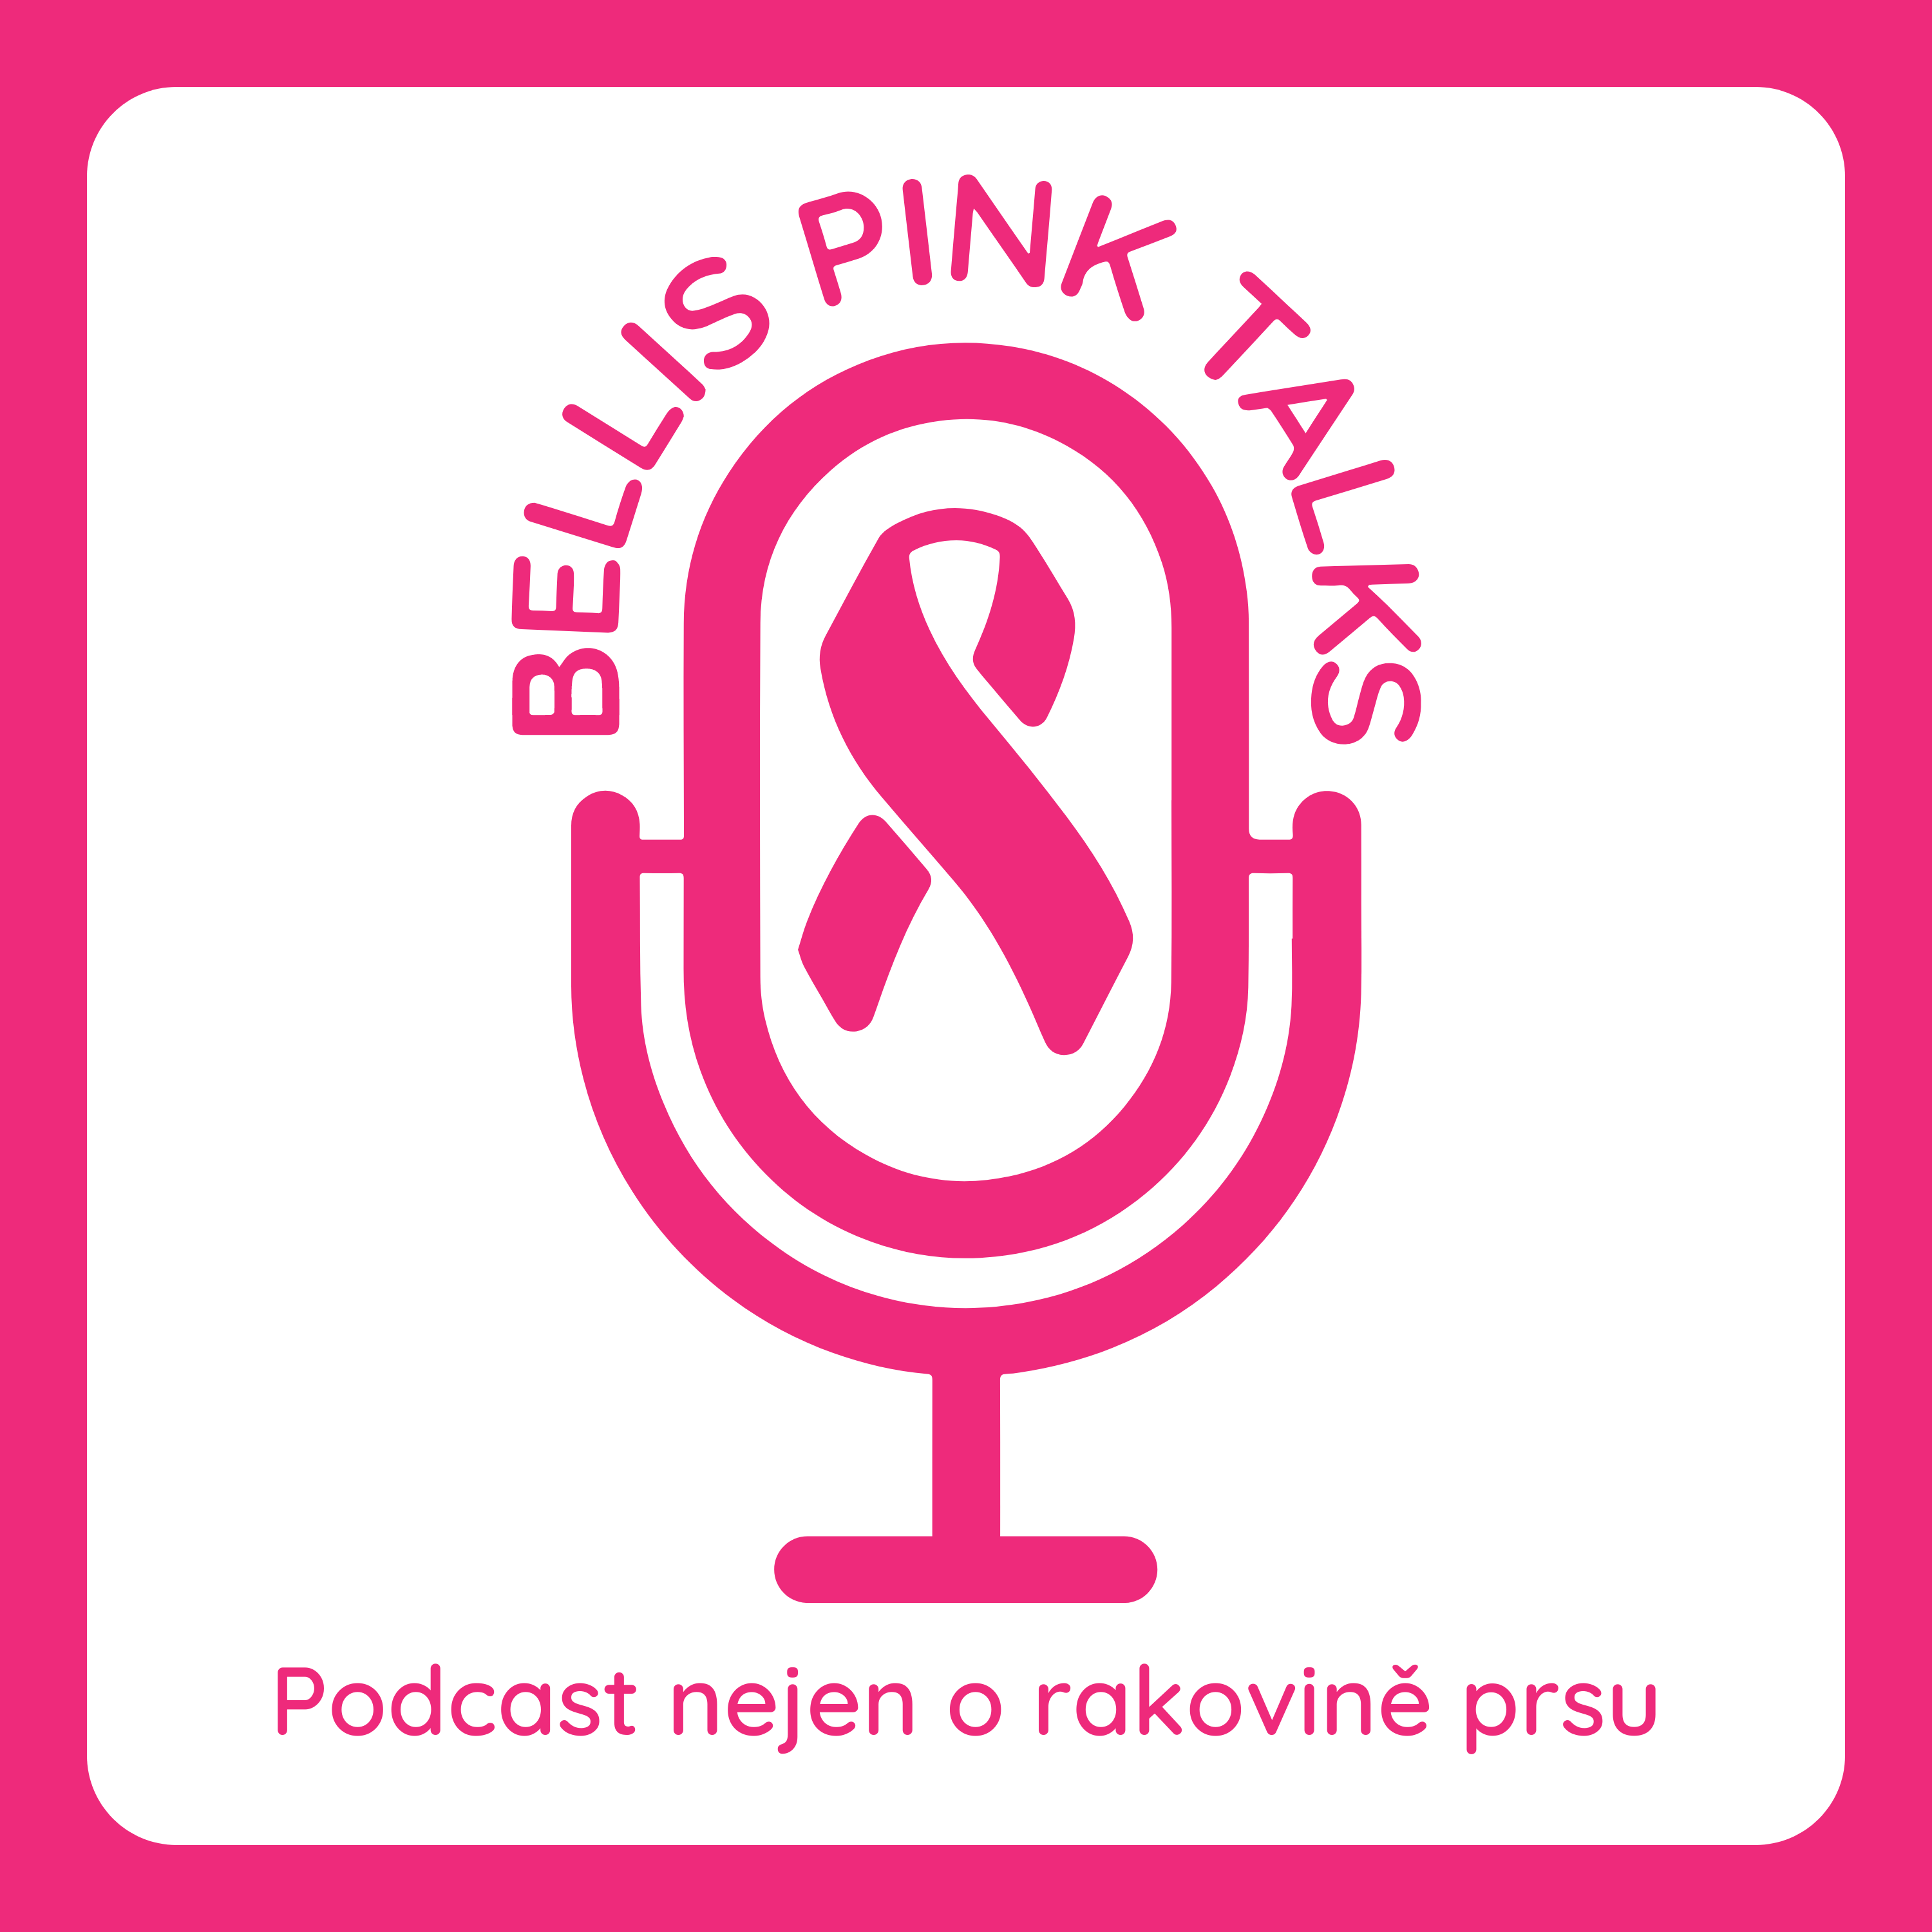 PODCAST BELLIS PINK TALKS rozhovory nejen o rakovině prsu